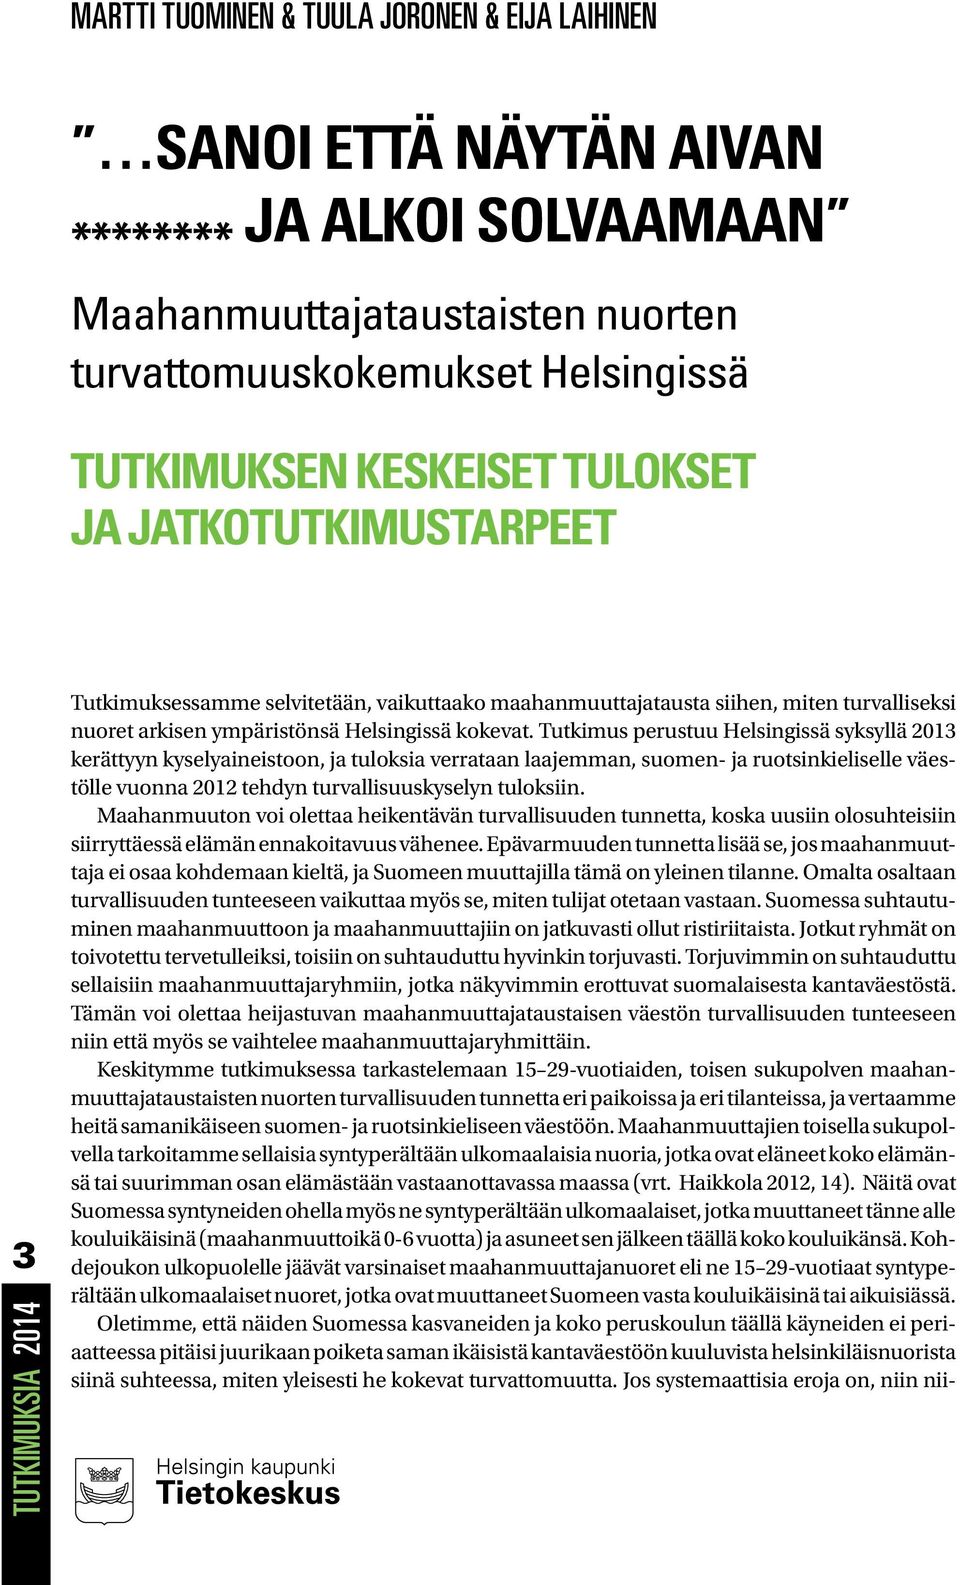 Tutkimus perustuu Helsingissä syksyllä 2013 kerättyyn kyselyaineistoon, ja tuloksia verrataan laajemman, suomen- ja ruotsinkieliselle väestölle vuonna 2012 tehdyn turvallisuuskyselyn tuloksiin.